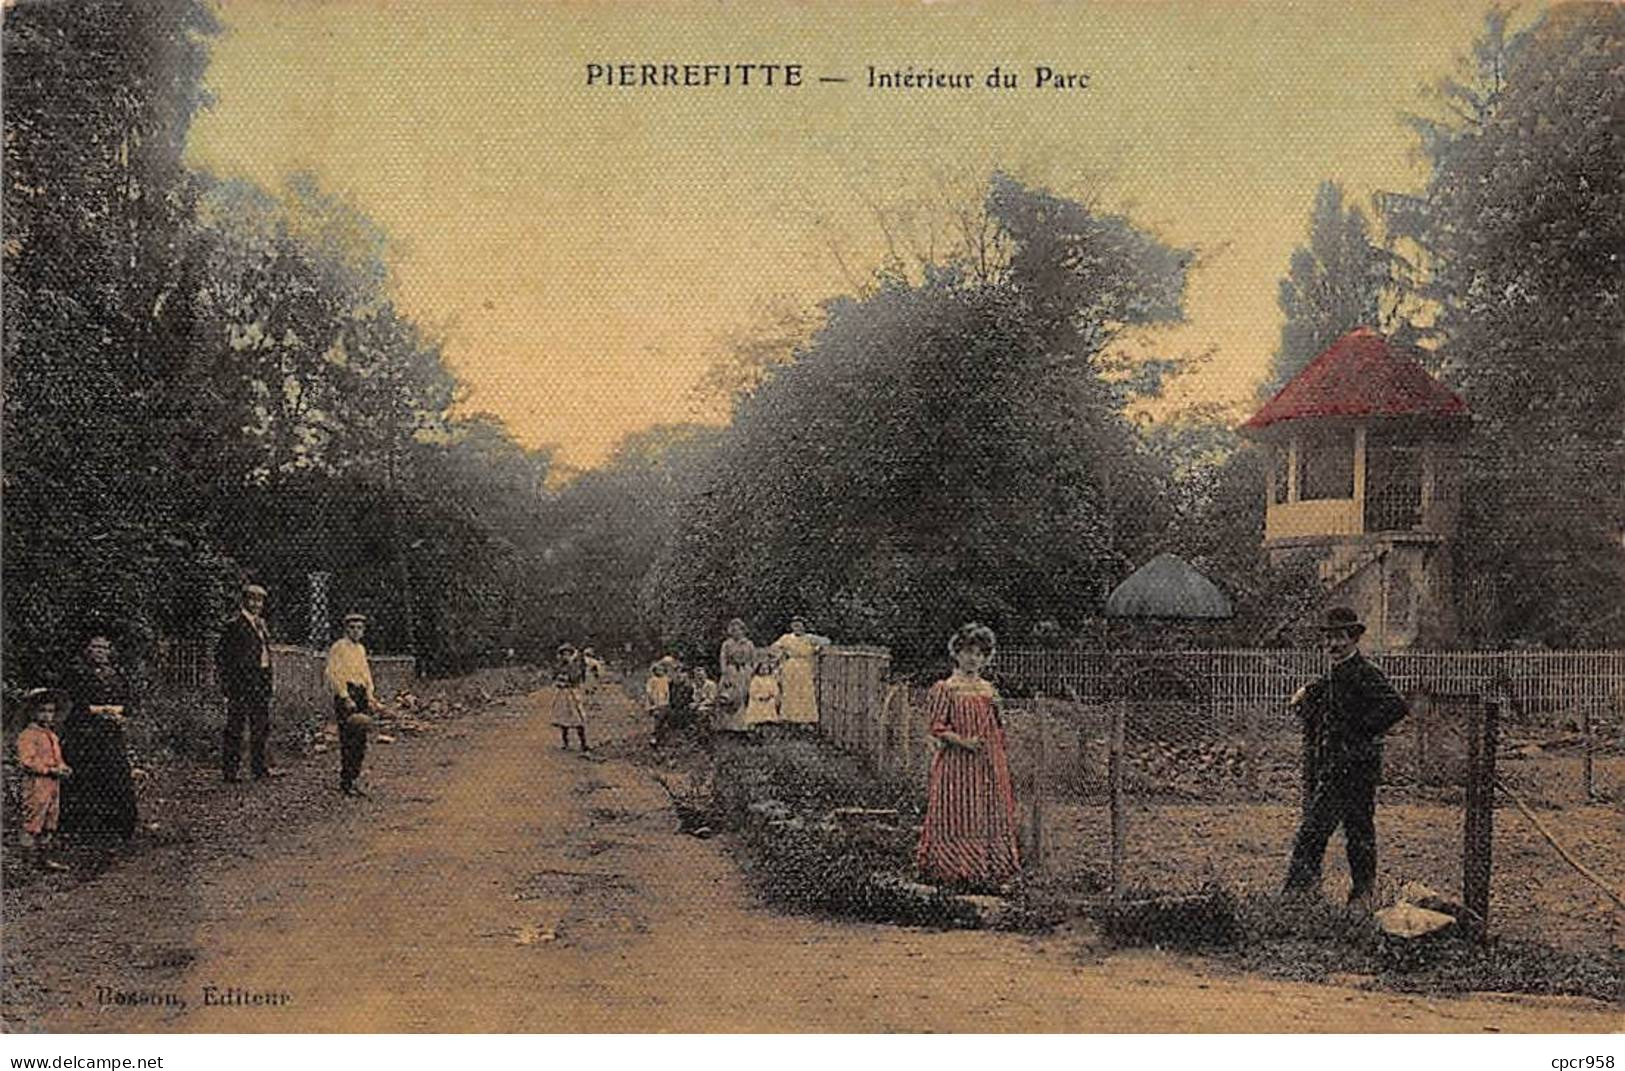 93 - PIERREFITTE - SAN57524 - Intérieur Du Parc - Pierrefitte Sur Seine